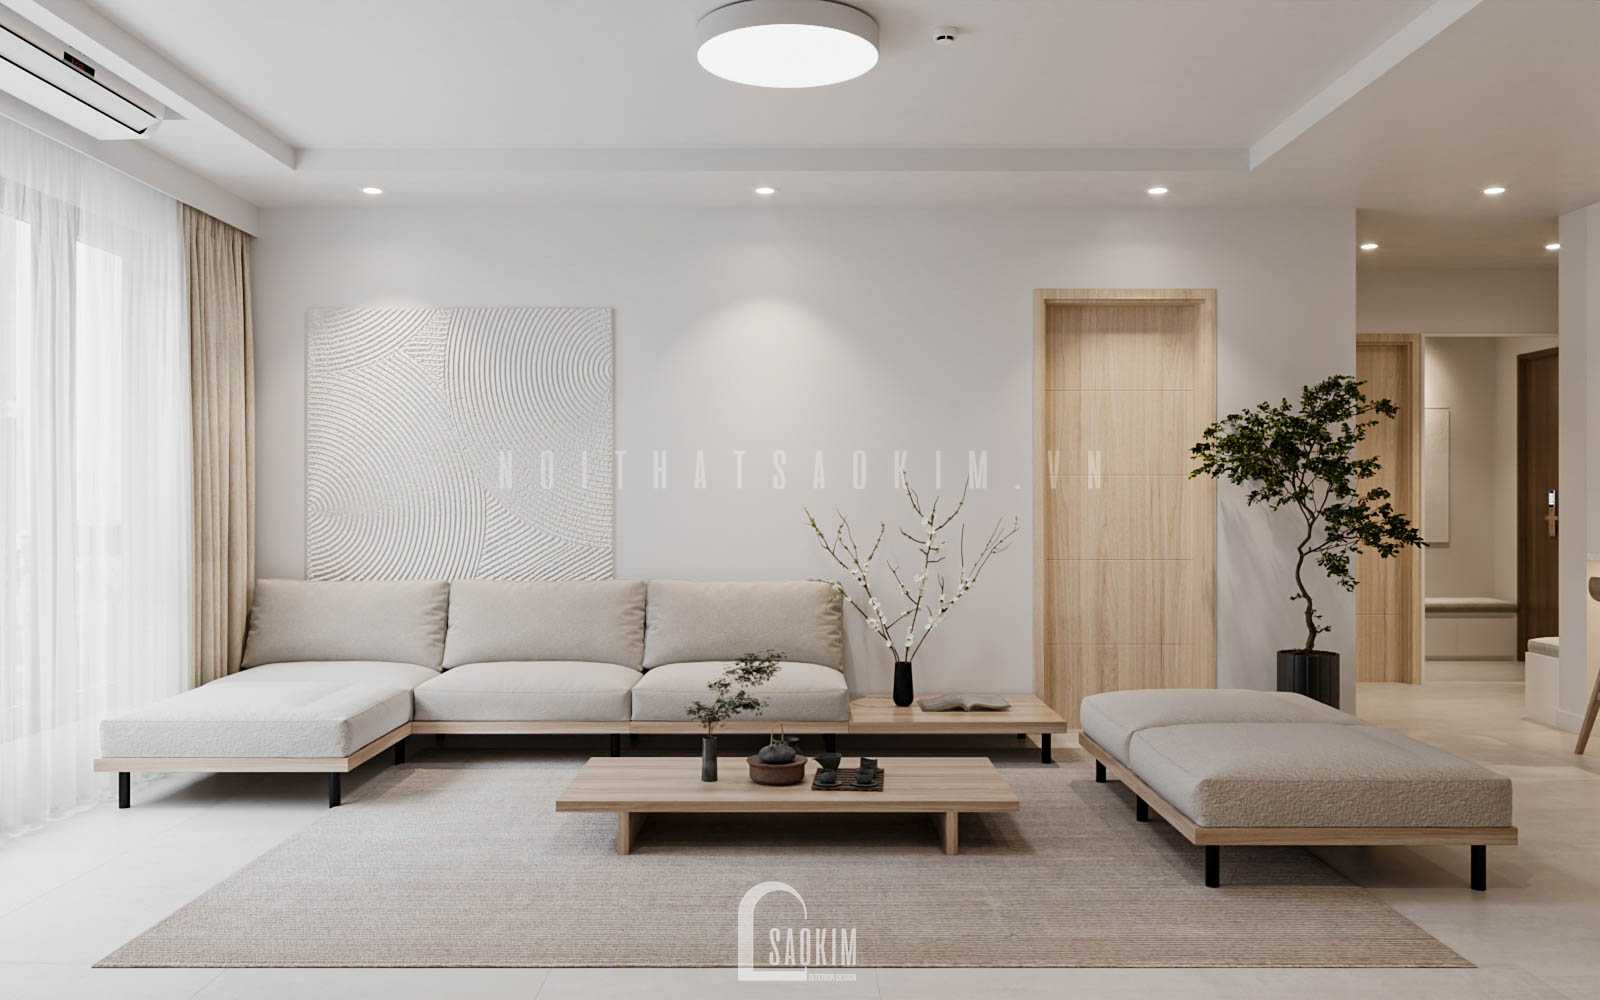 Thiết kế nội thất căn hộ chung cư La Casta Hà Đông thiết kế mới phong cách hiện đại